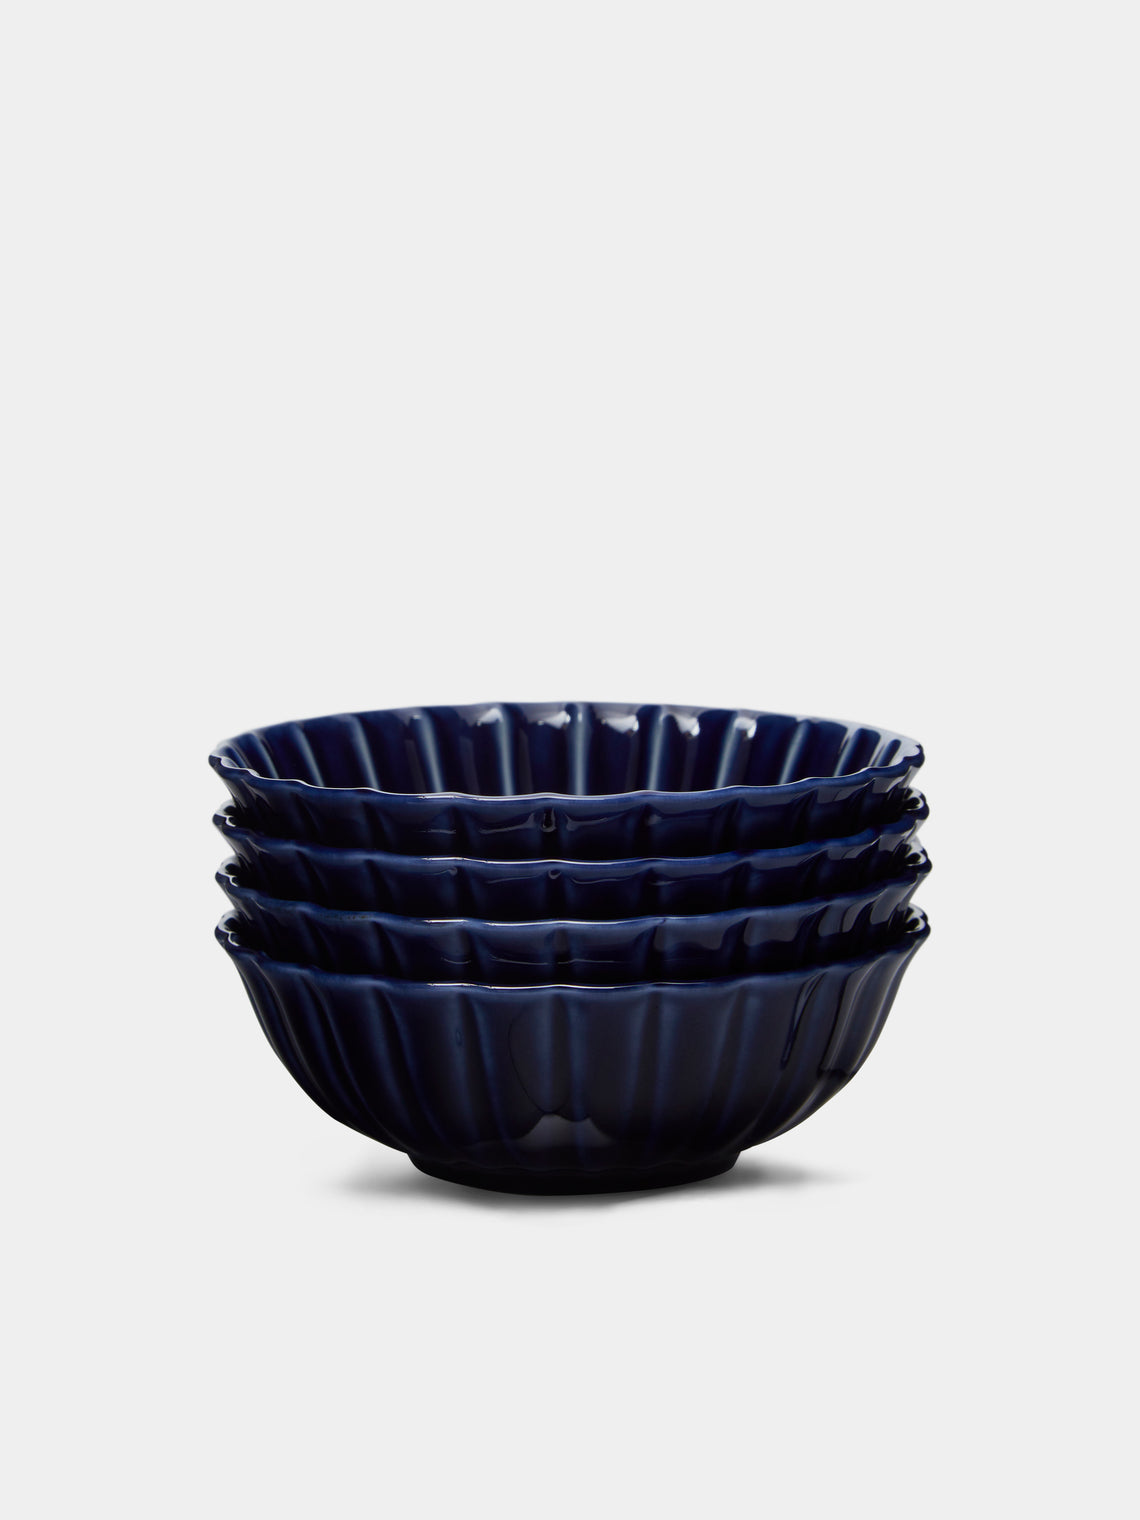 Kaneko Kohyo - Giyaman Urushi Ceramic Shallow Bowls (Set of 4) - Blue - ABASK